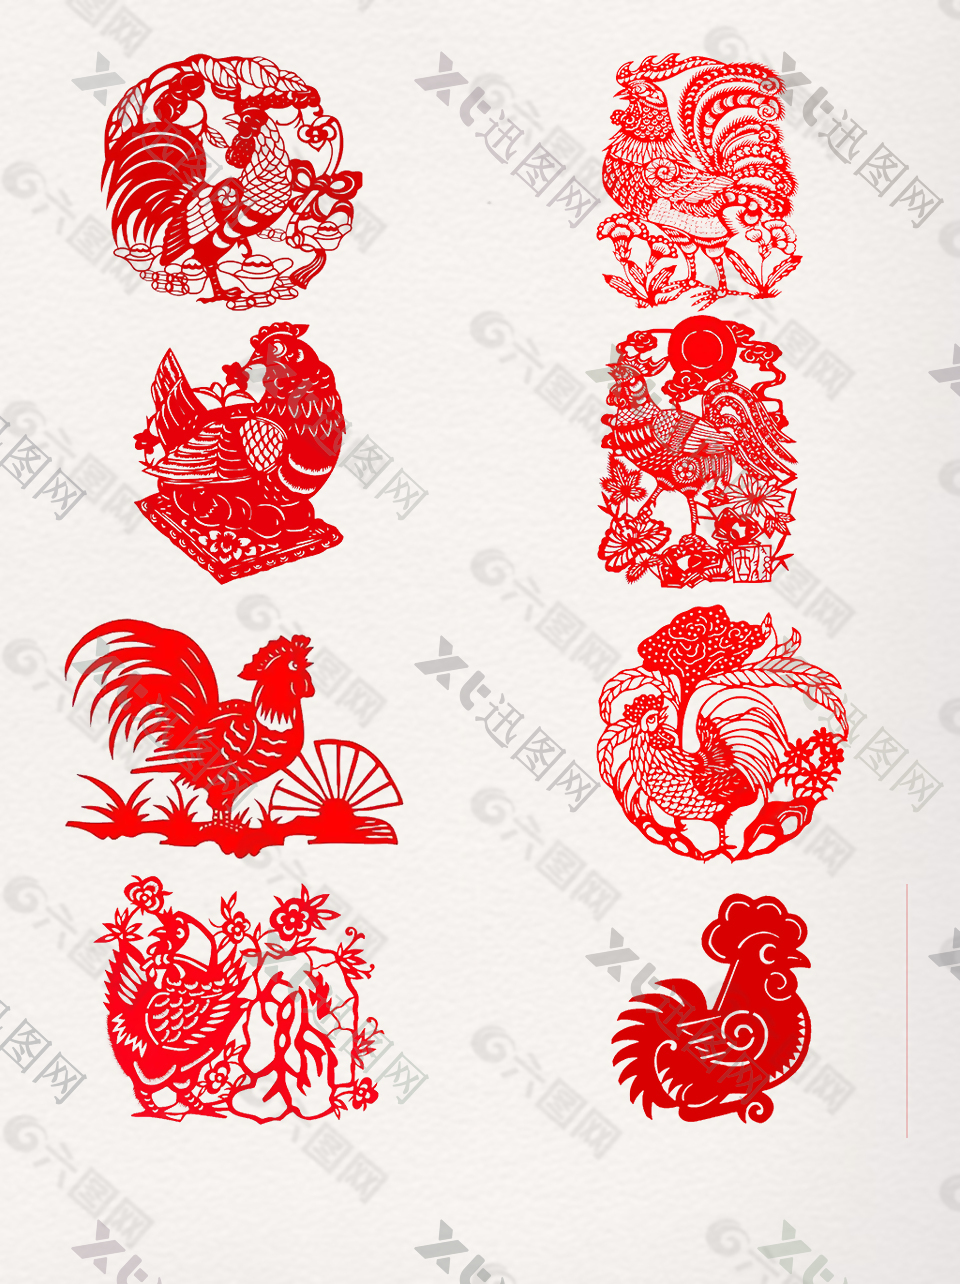 中国传统公鸡剪纸素材